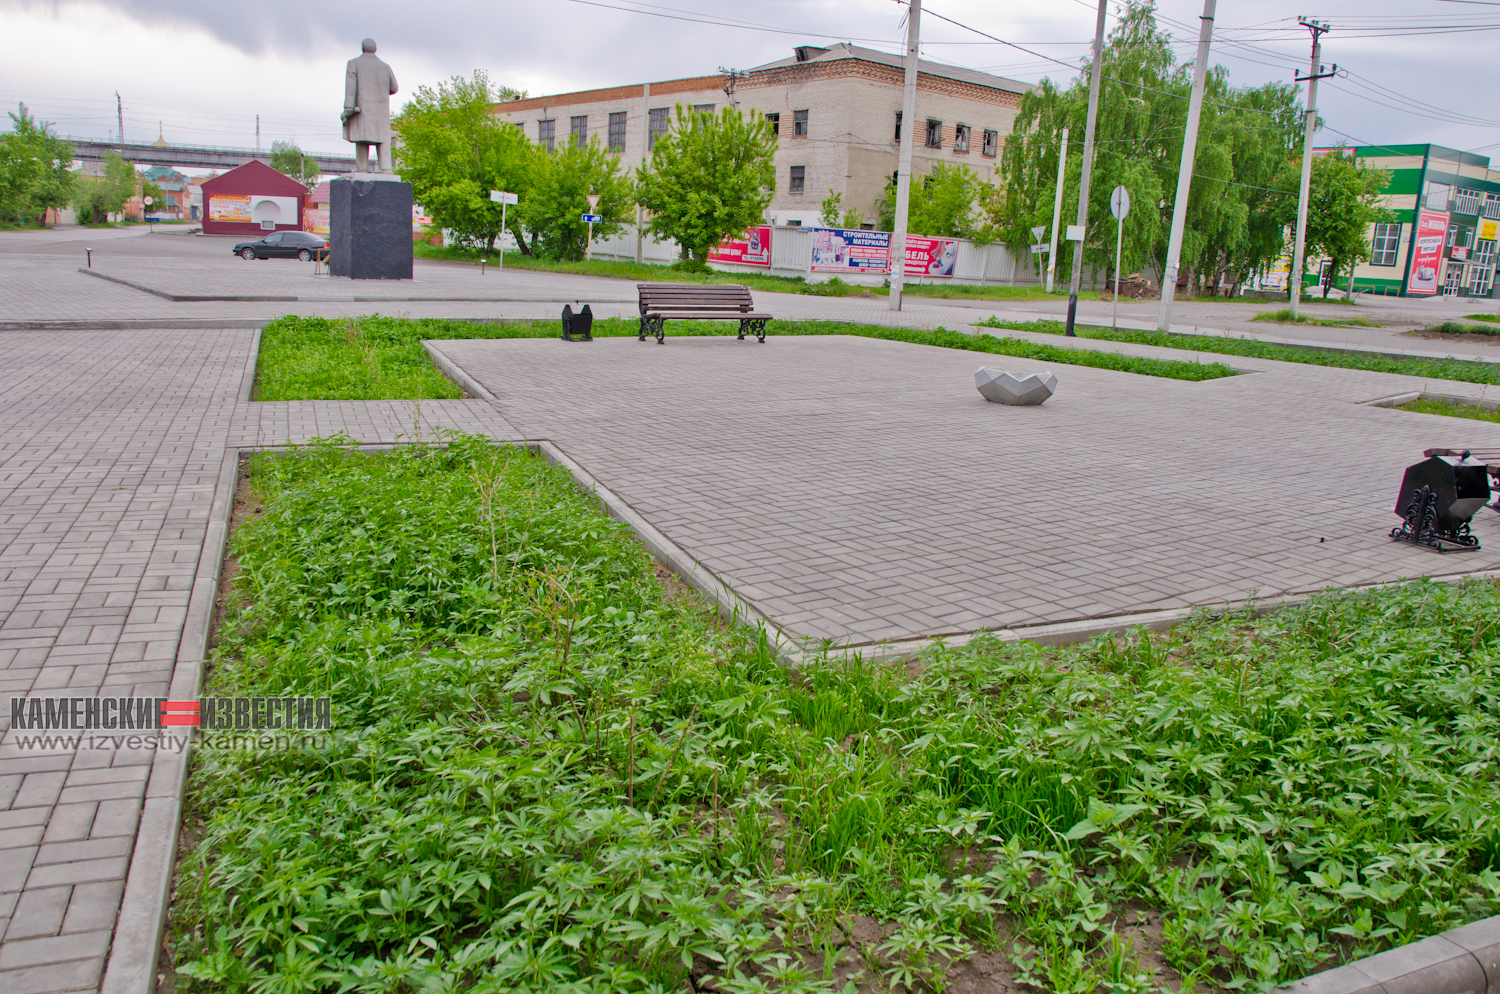 Комфортная среда: Центр алтайского города благоустроили клумбами с коноплей Алтай,благоустройство,конопля,общество,россияне,чиновники